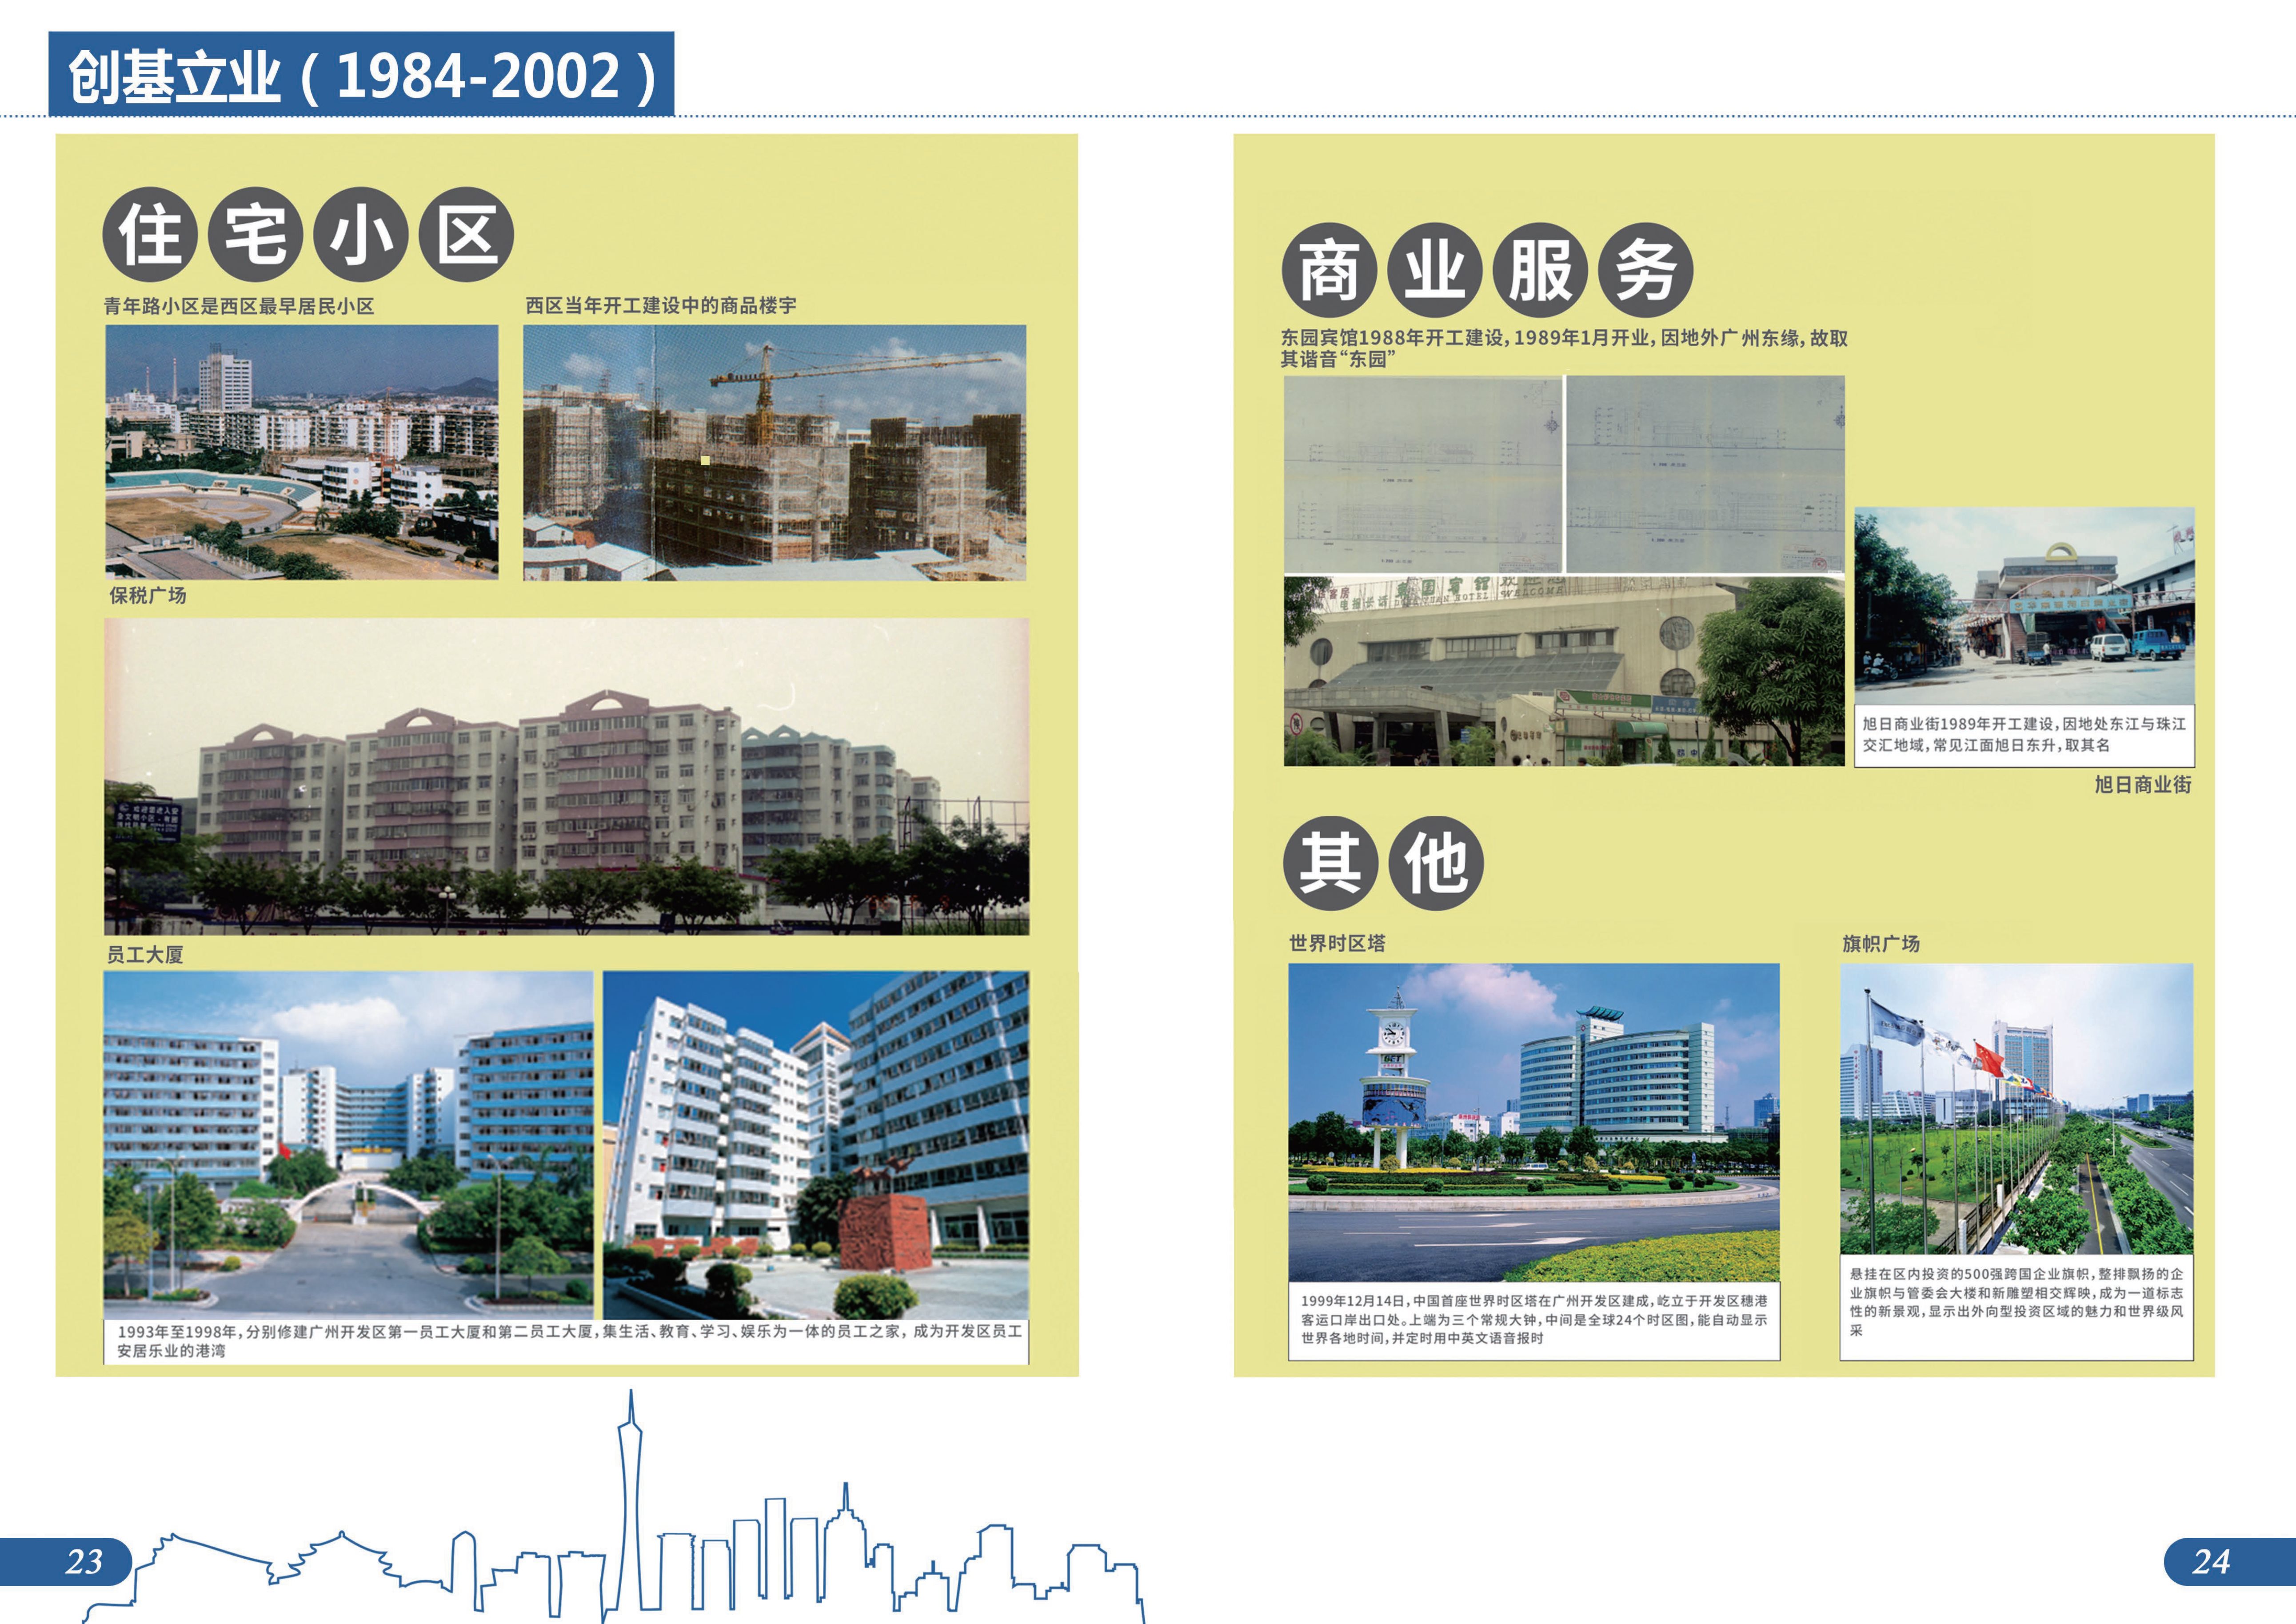 城市建设档案图片展图册成品20230807-14.jpg